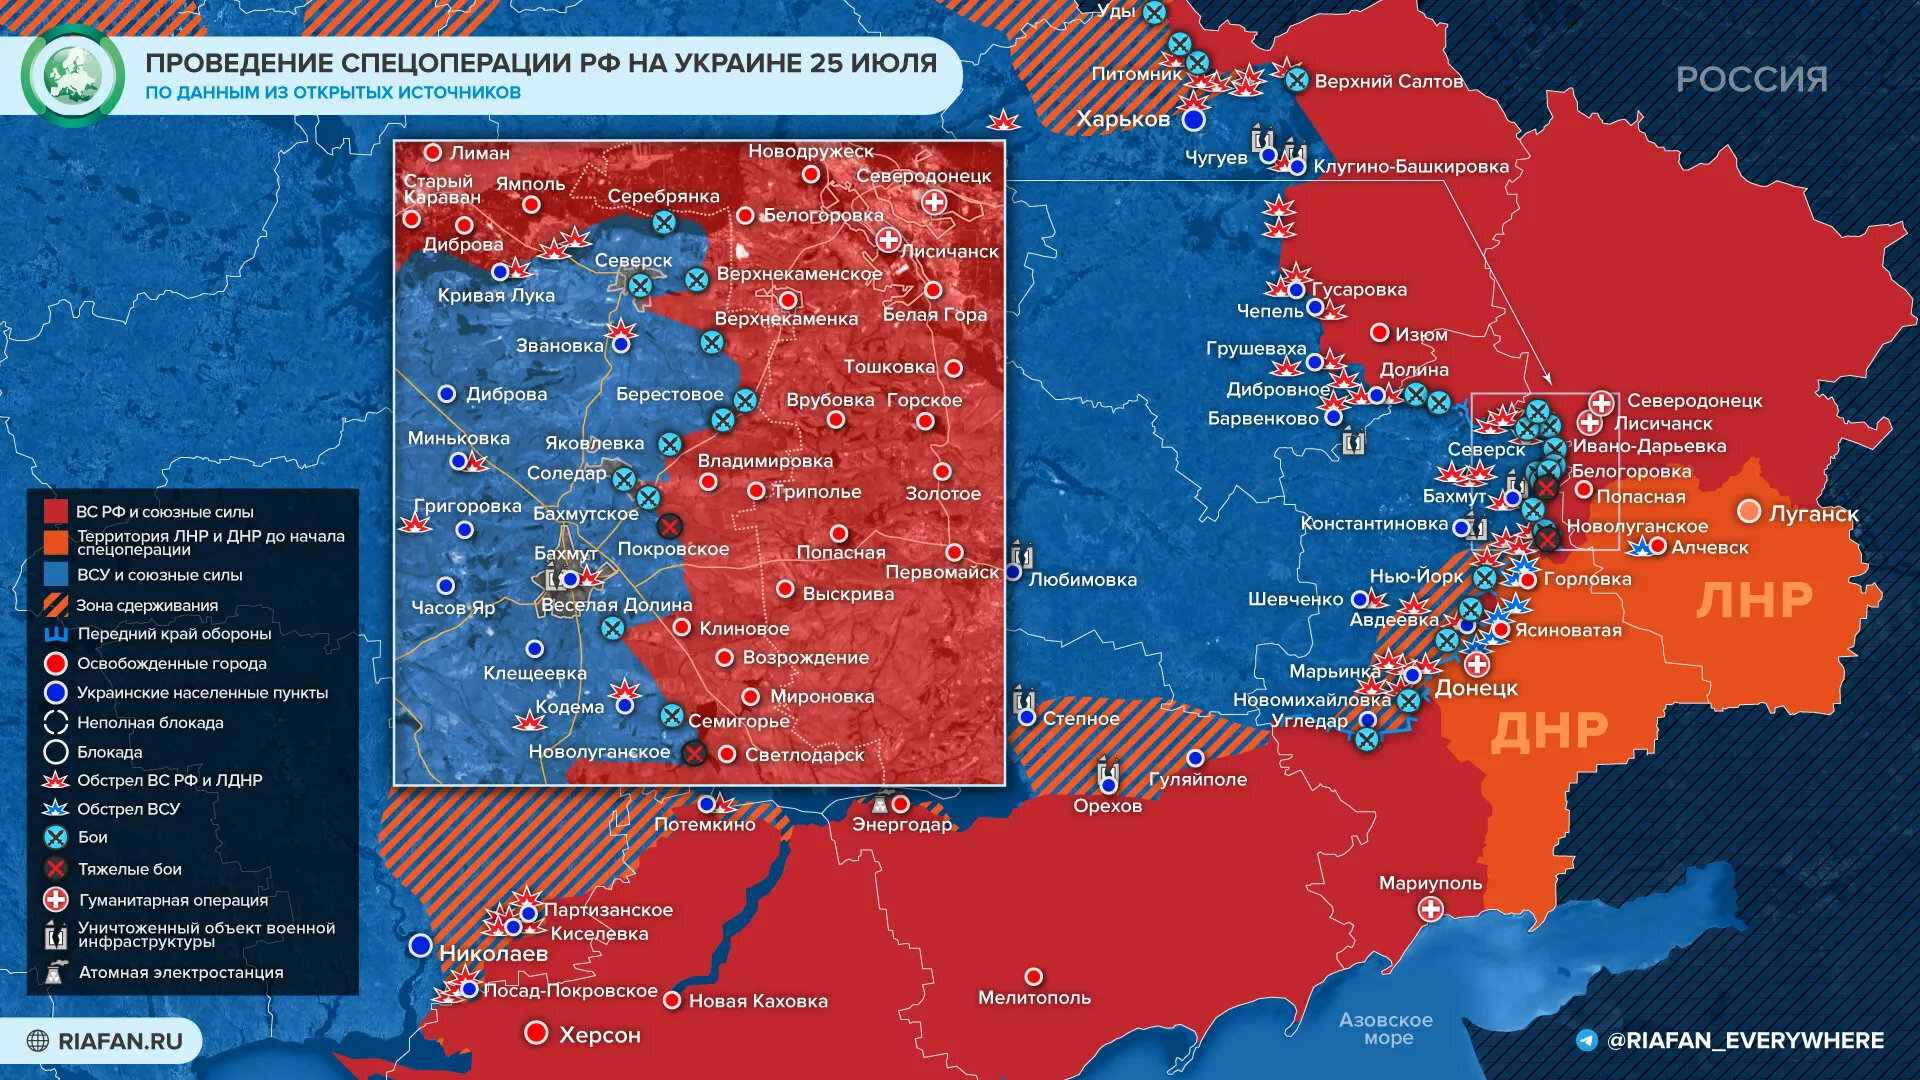 Обновленная новая карта боевых действий на Украине на 27 июля 2022 г. - Минобороны обновило новую карту боевых действий операции 27.07.2022 (данные на 27 июля 2022 г.)